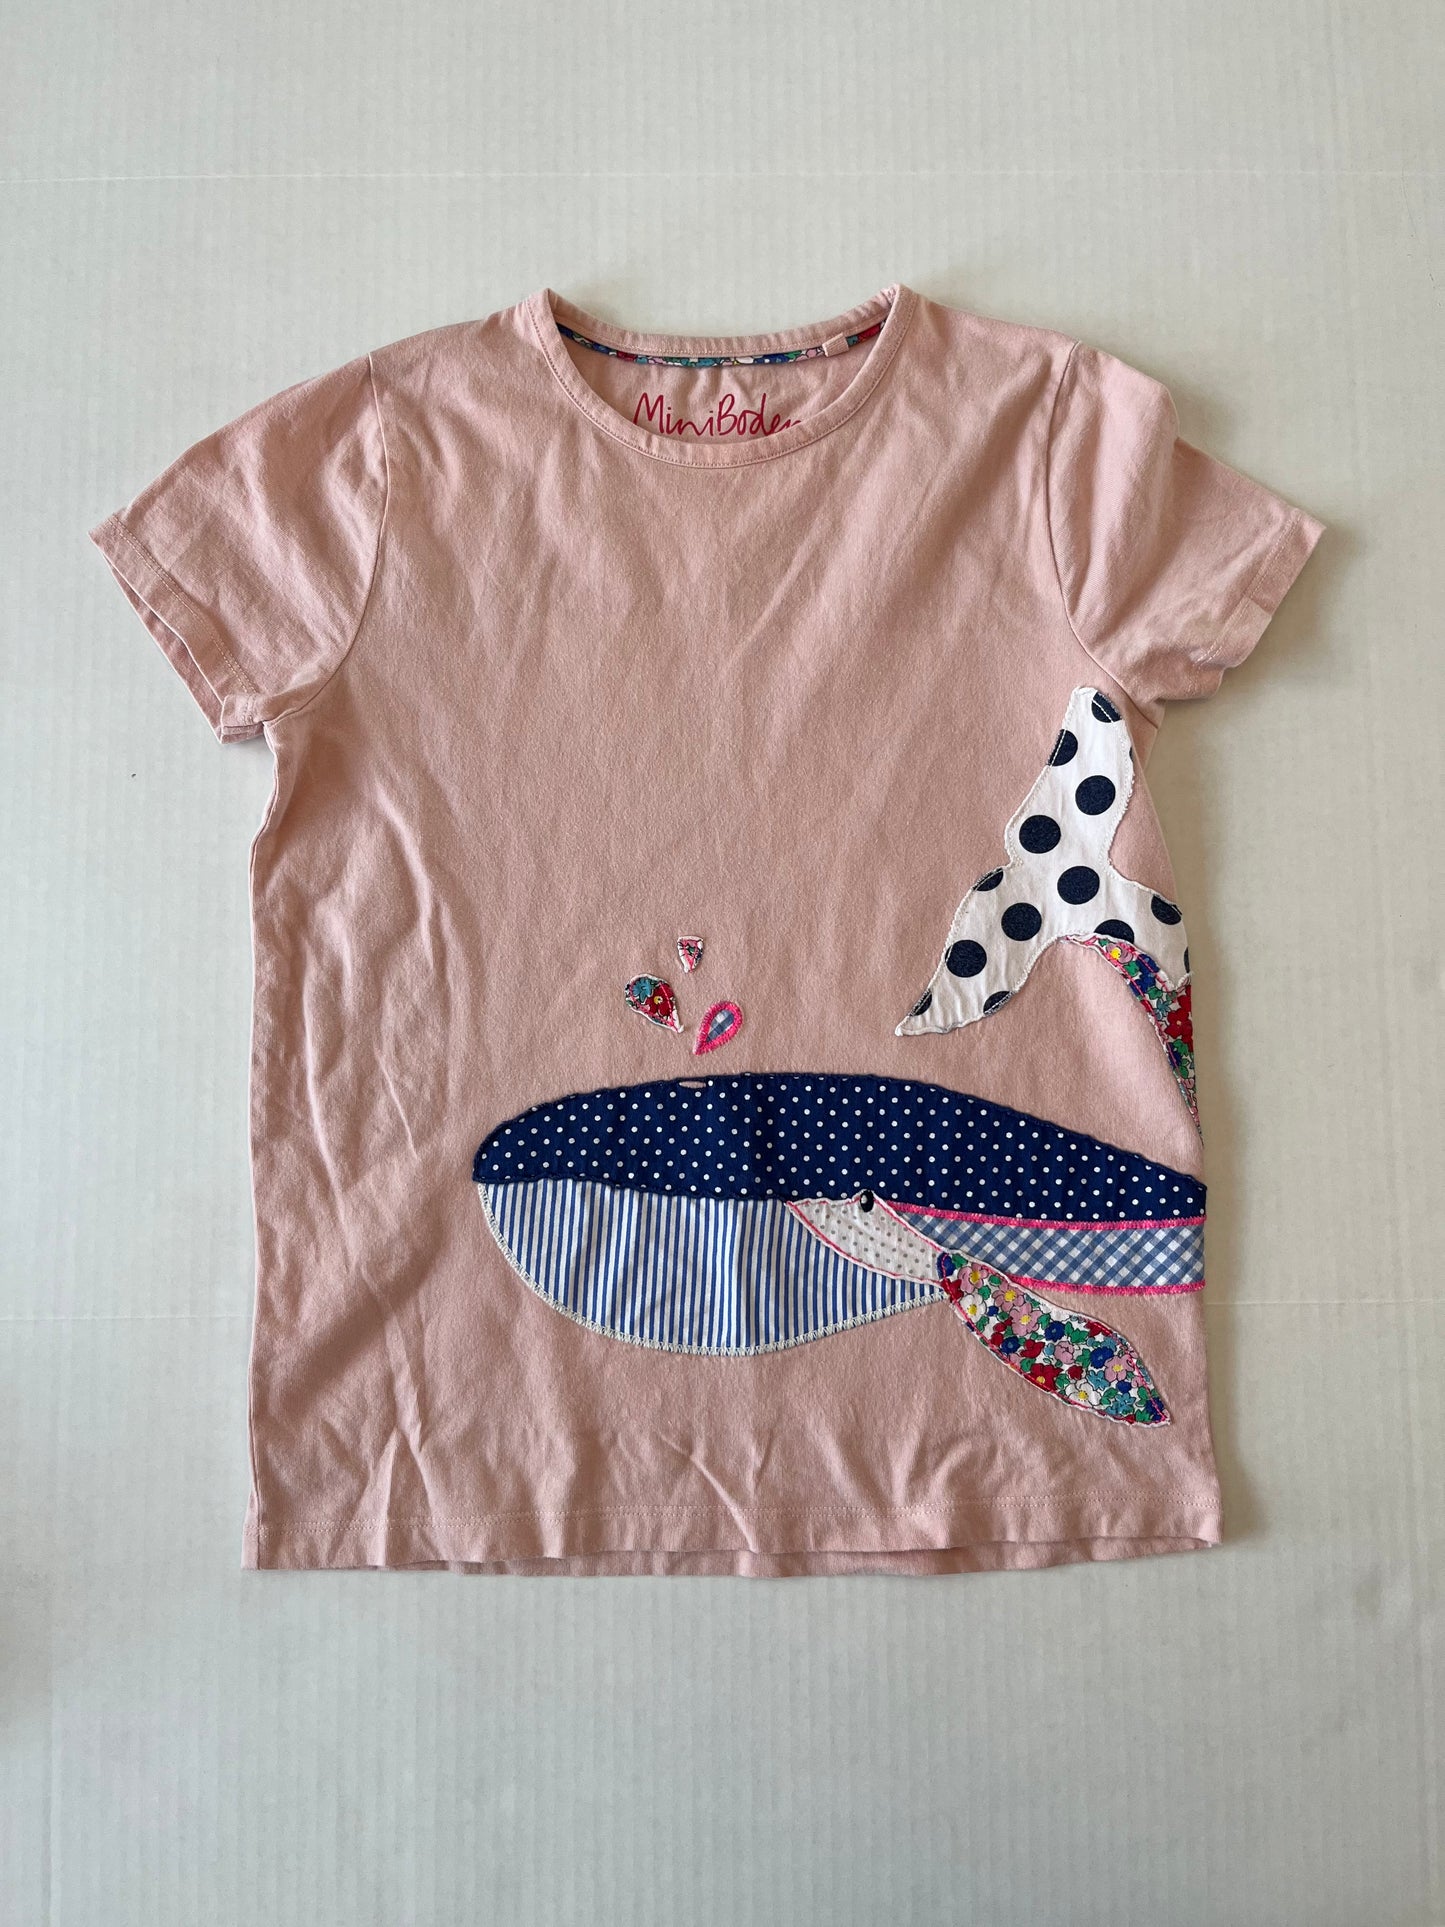 Mini Boden appliqué whale T-shirt size 11/12. PPU Mariemont